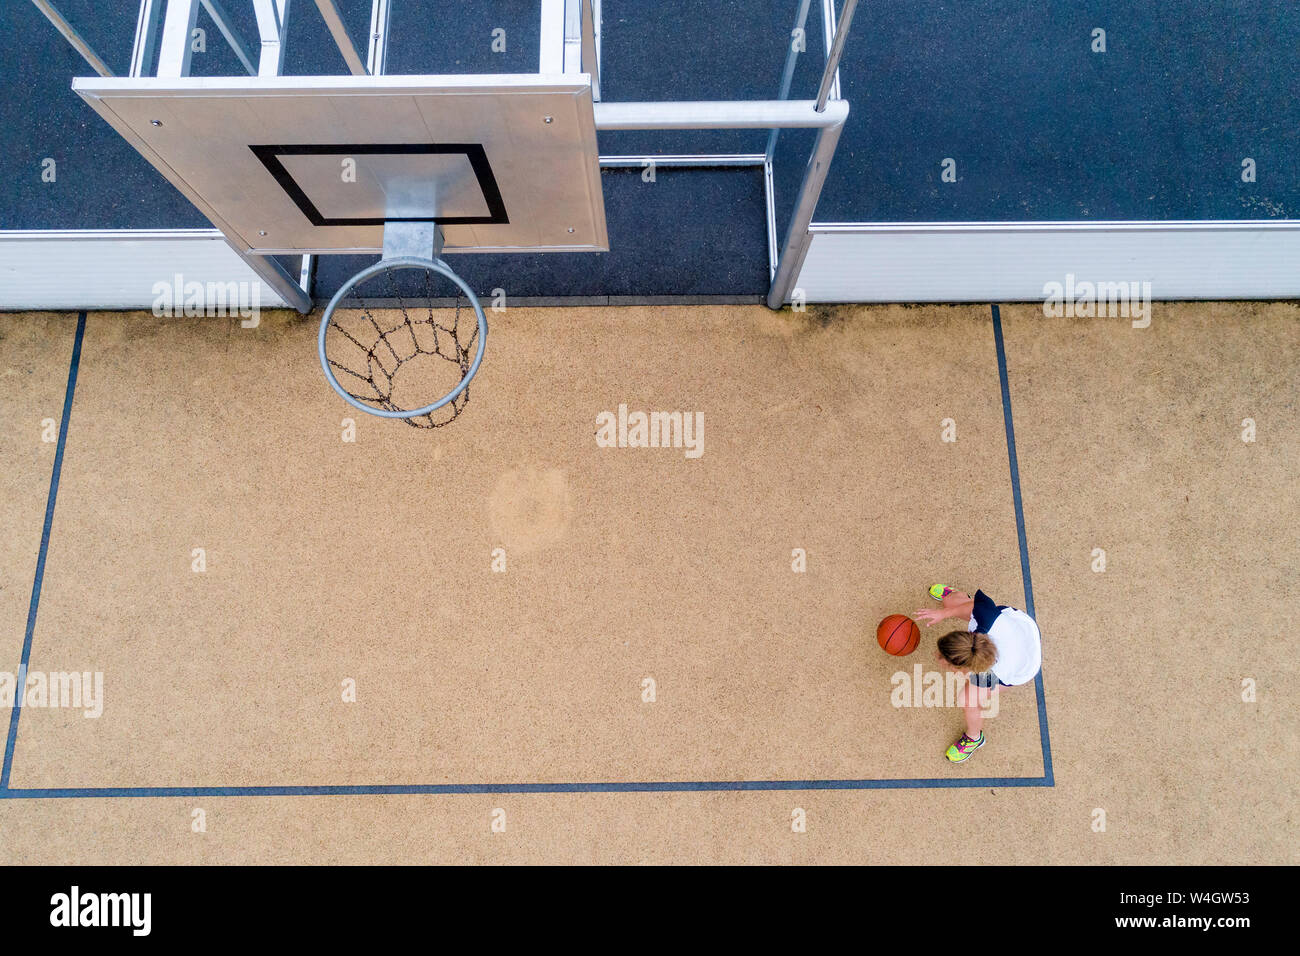 Jeune femme jouant au basket-ball, vue du dessus Banque D'Images